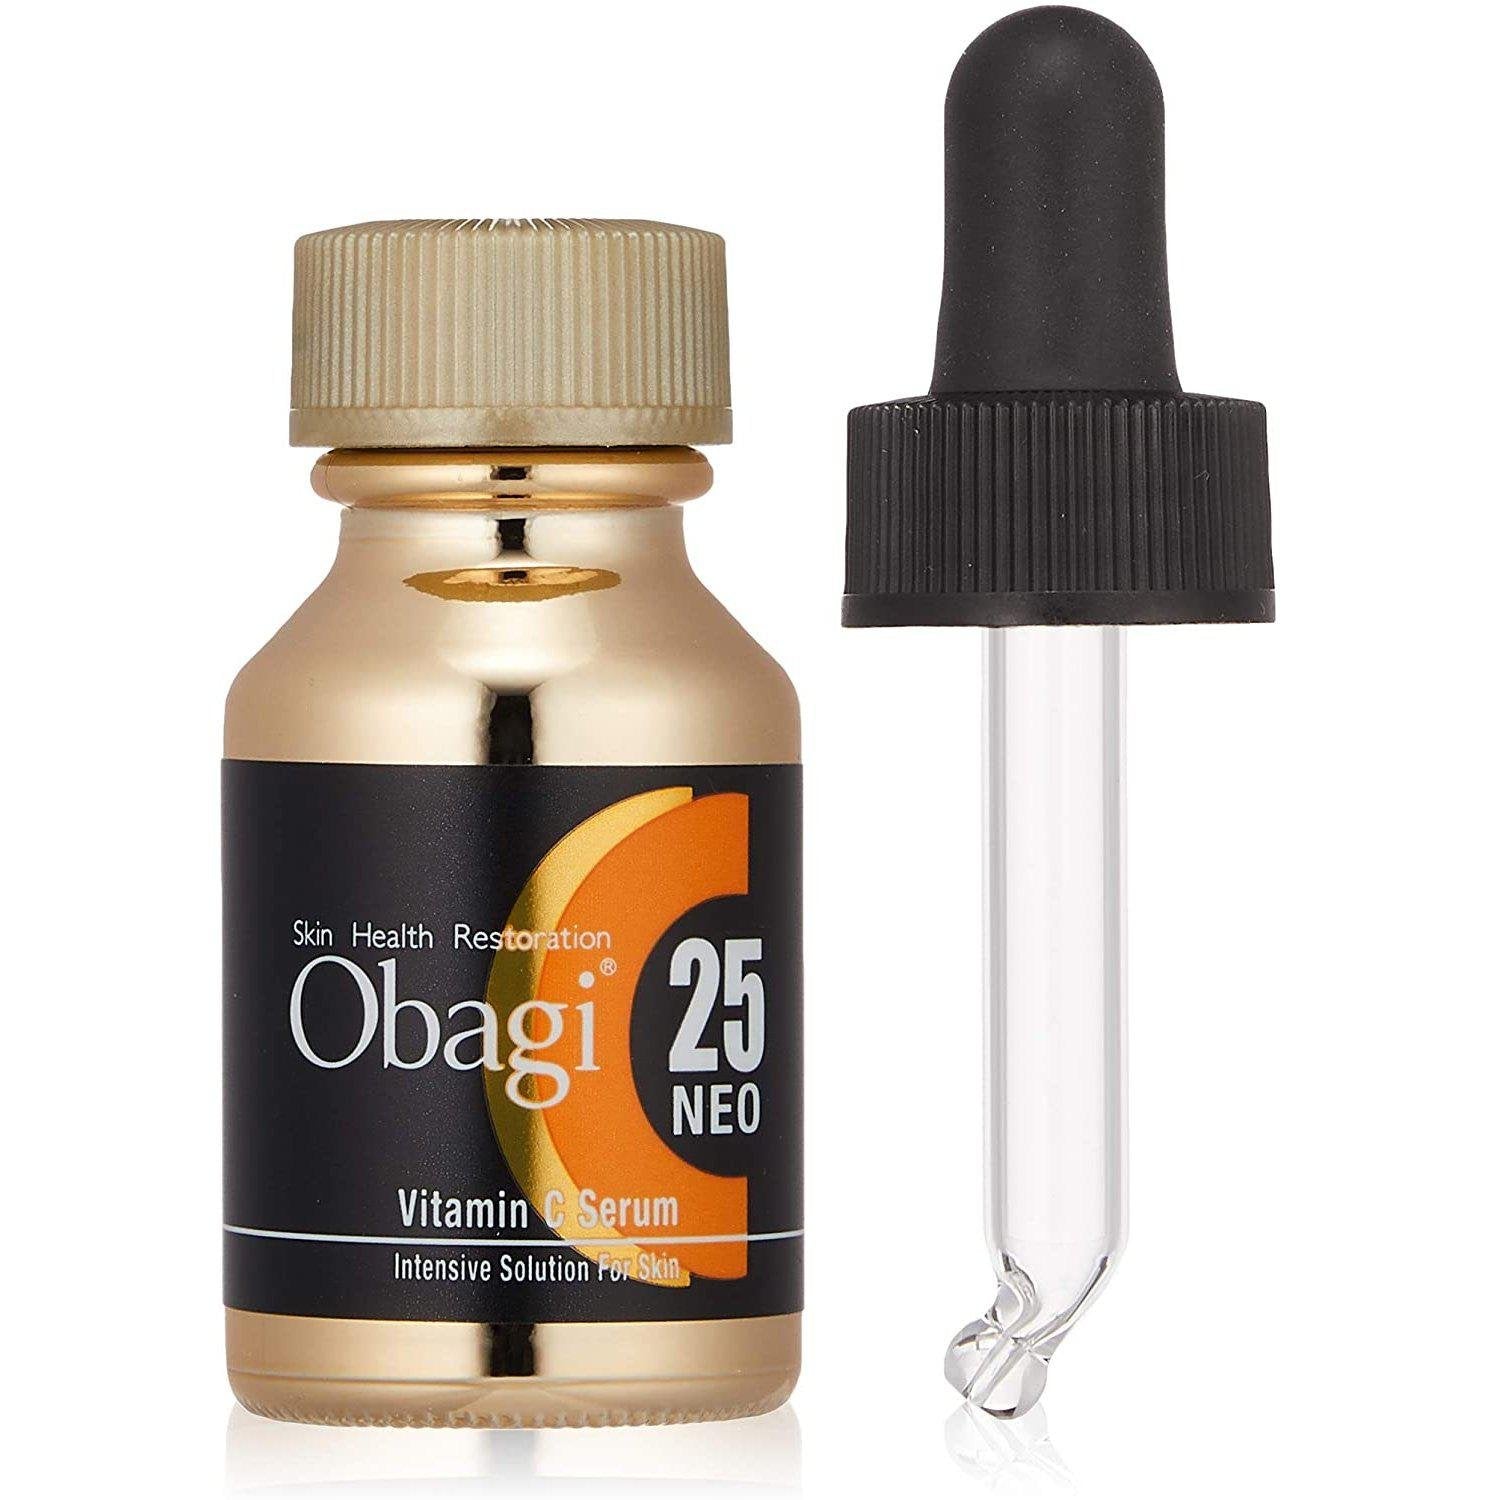 P-1-OBG-C25NEO-12-Rohto Obagi C25 Vitamin C Serum Neo 12ml.jpg